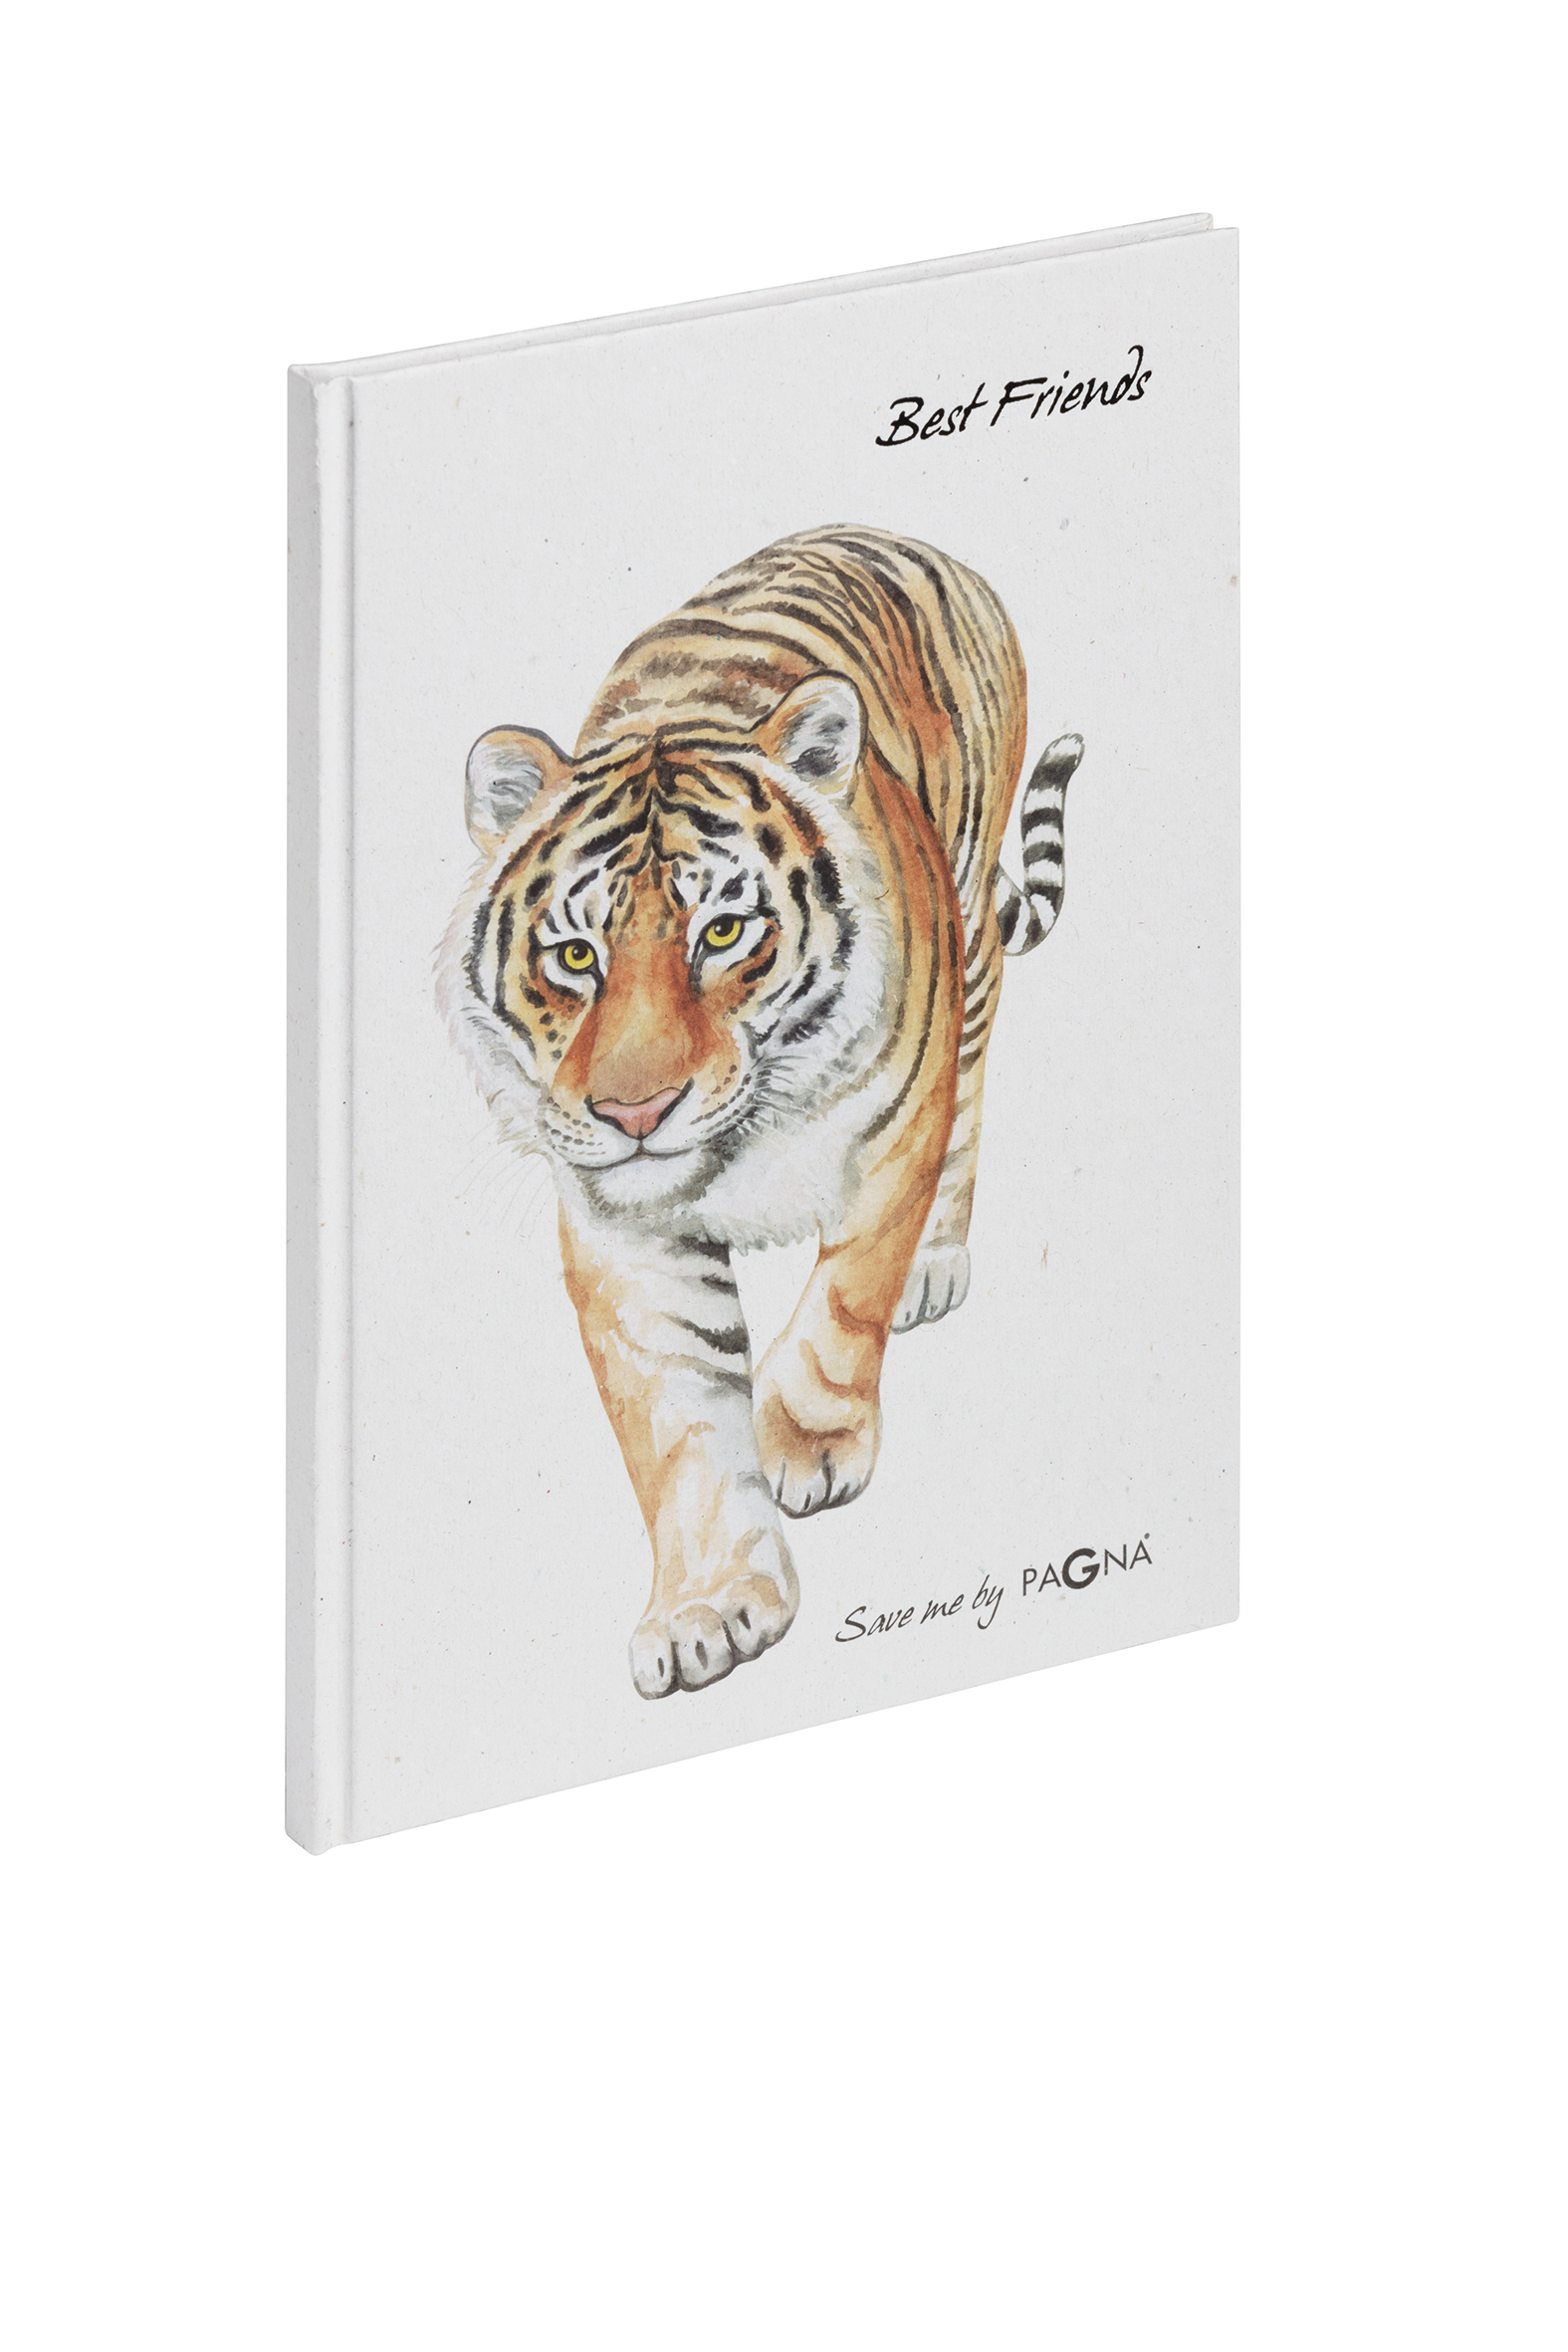 PAGNA Livre des amis 20371-15 Tigre 60 pages